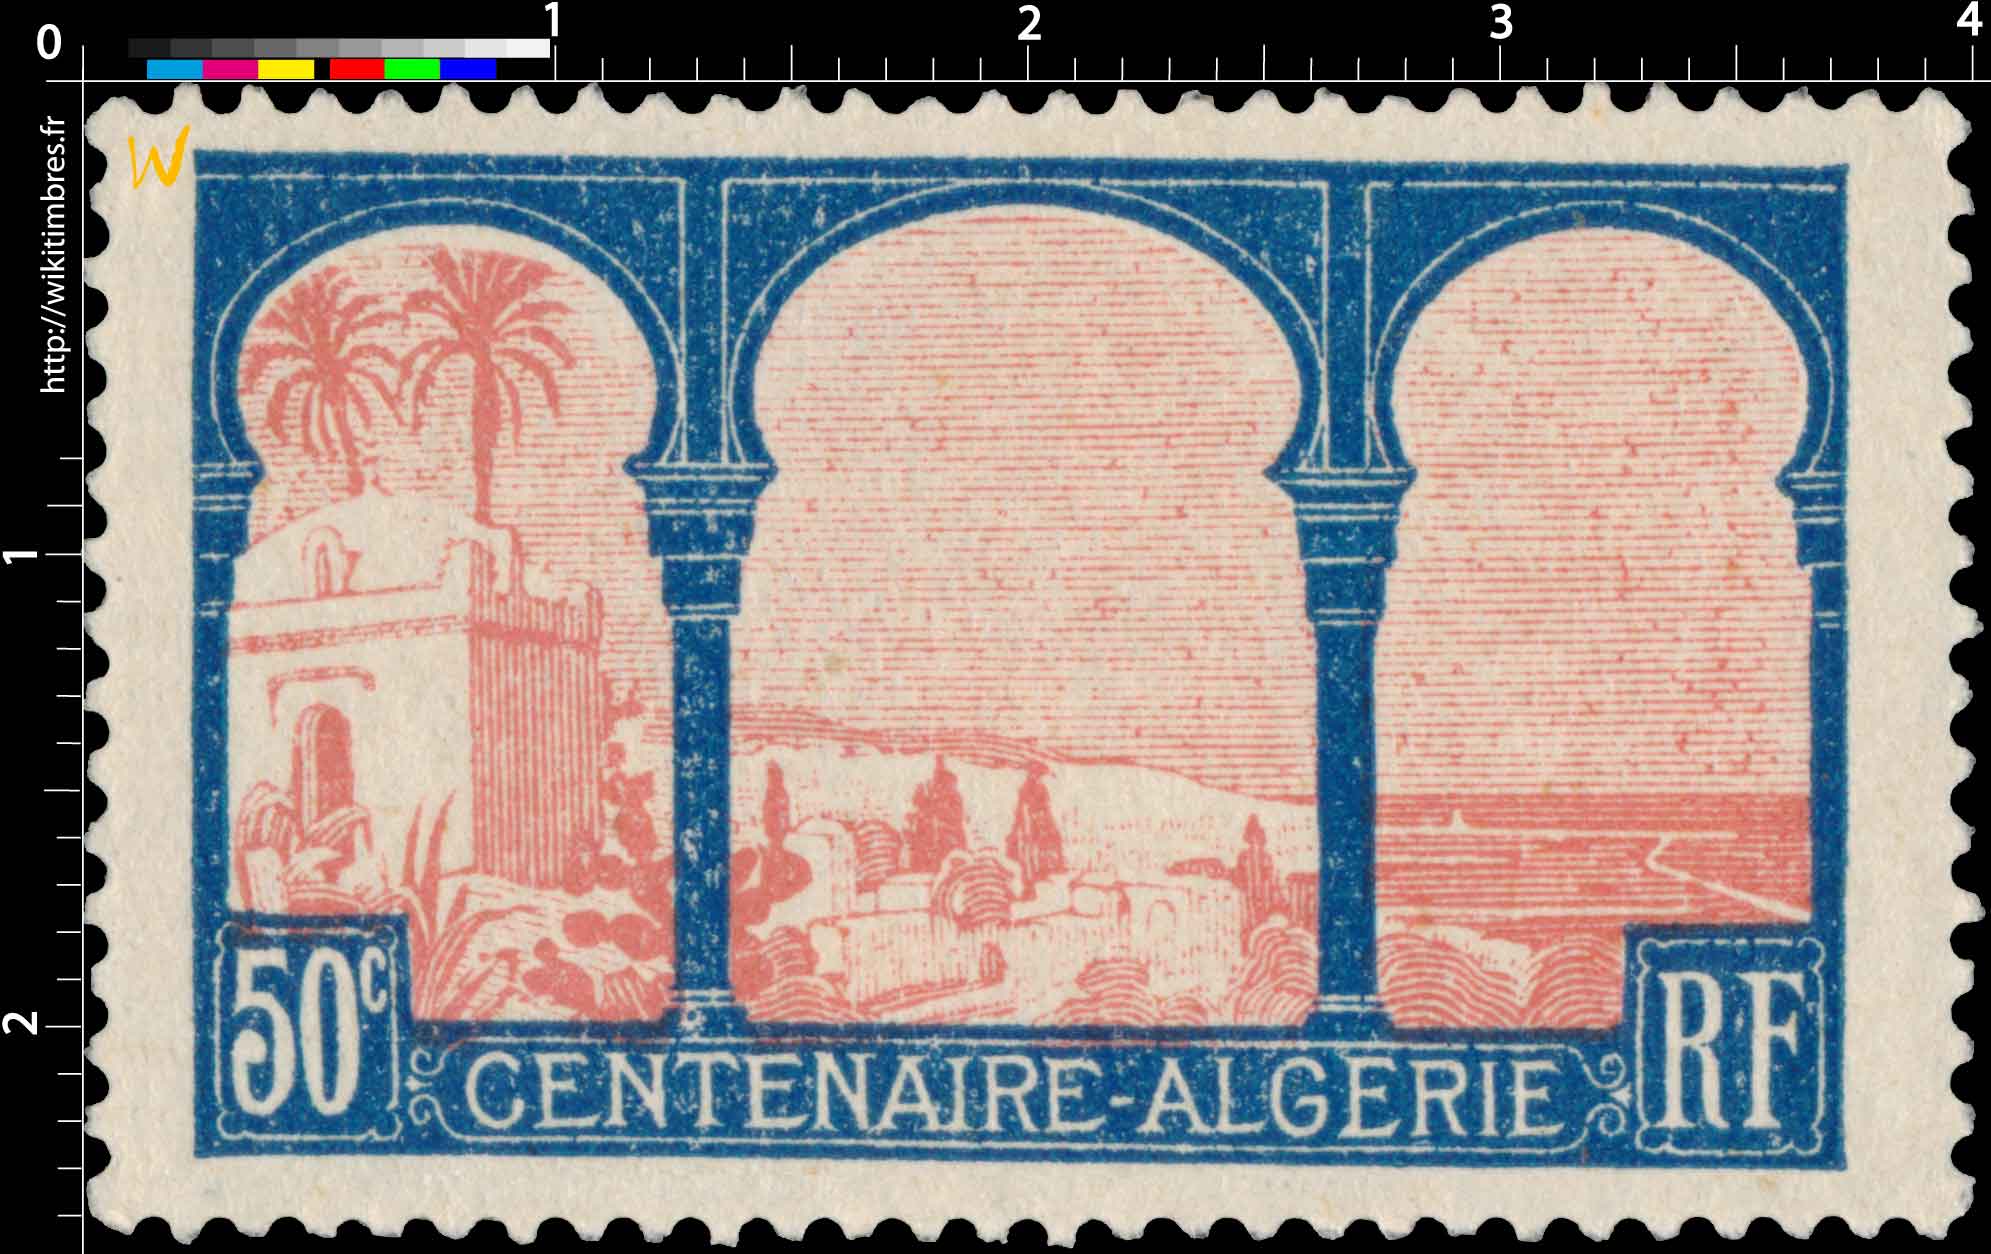 CENTENAIRE - ALGÉRIE